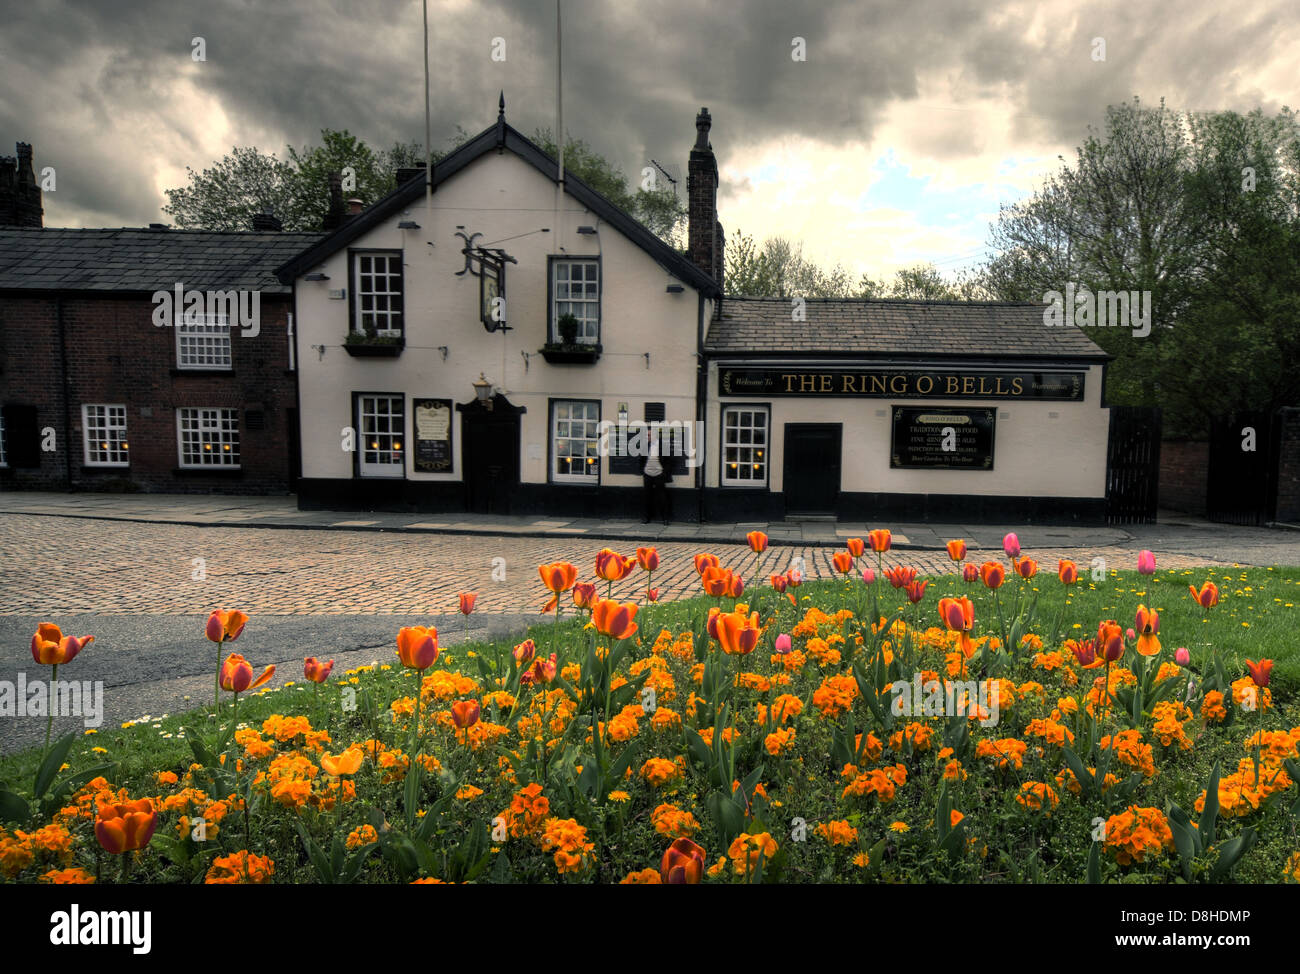 Anneau de cloches pub Warrington Cheshire England UK Banque D'Images